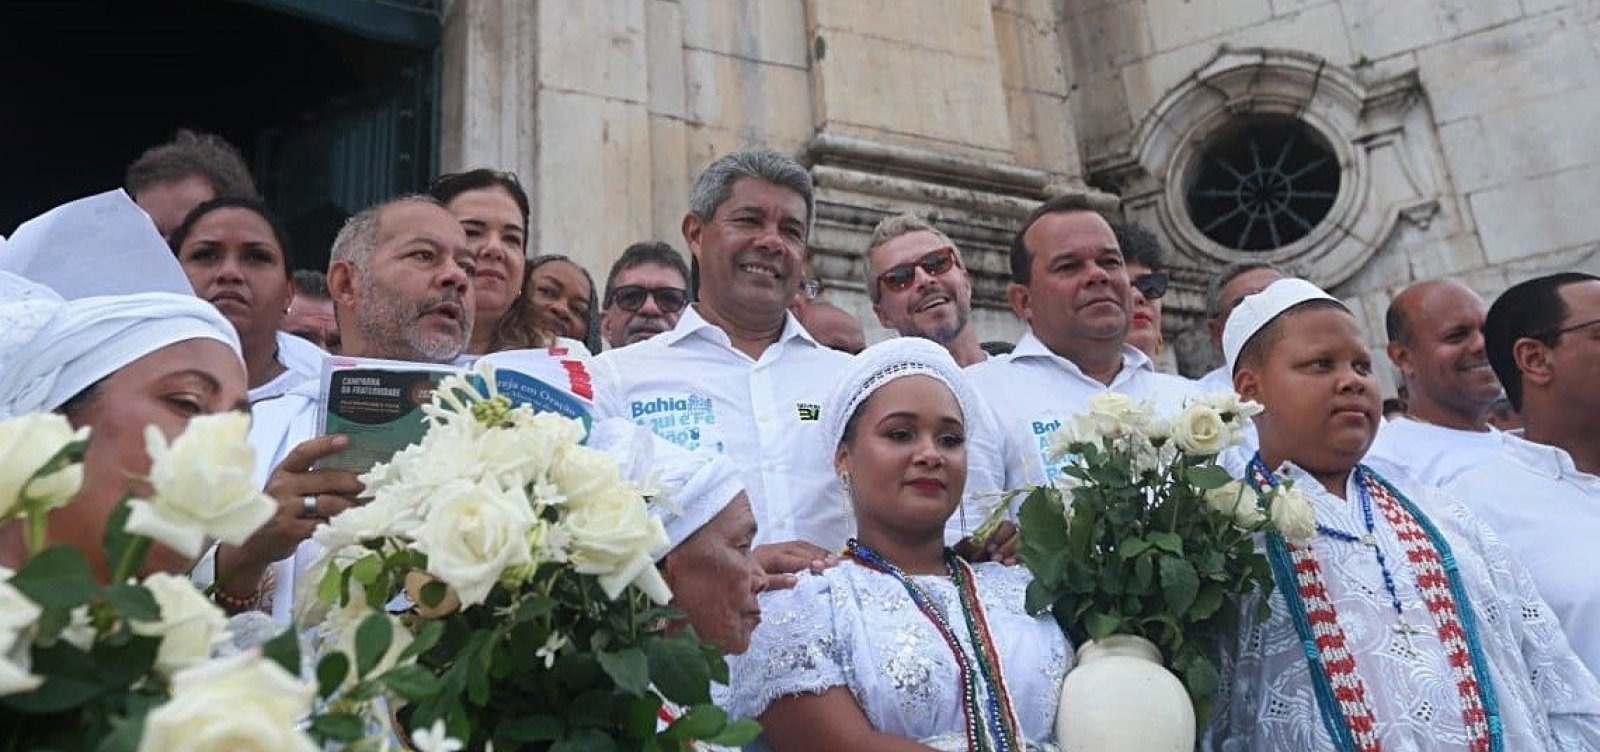 Jerônimo Rodrigues faz sua primeira participação na Festa do Bonfim, como governador da Bahia